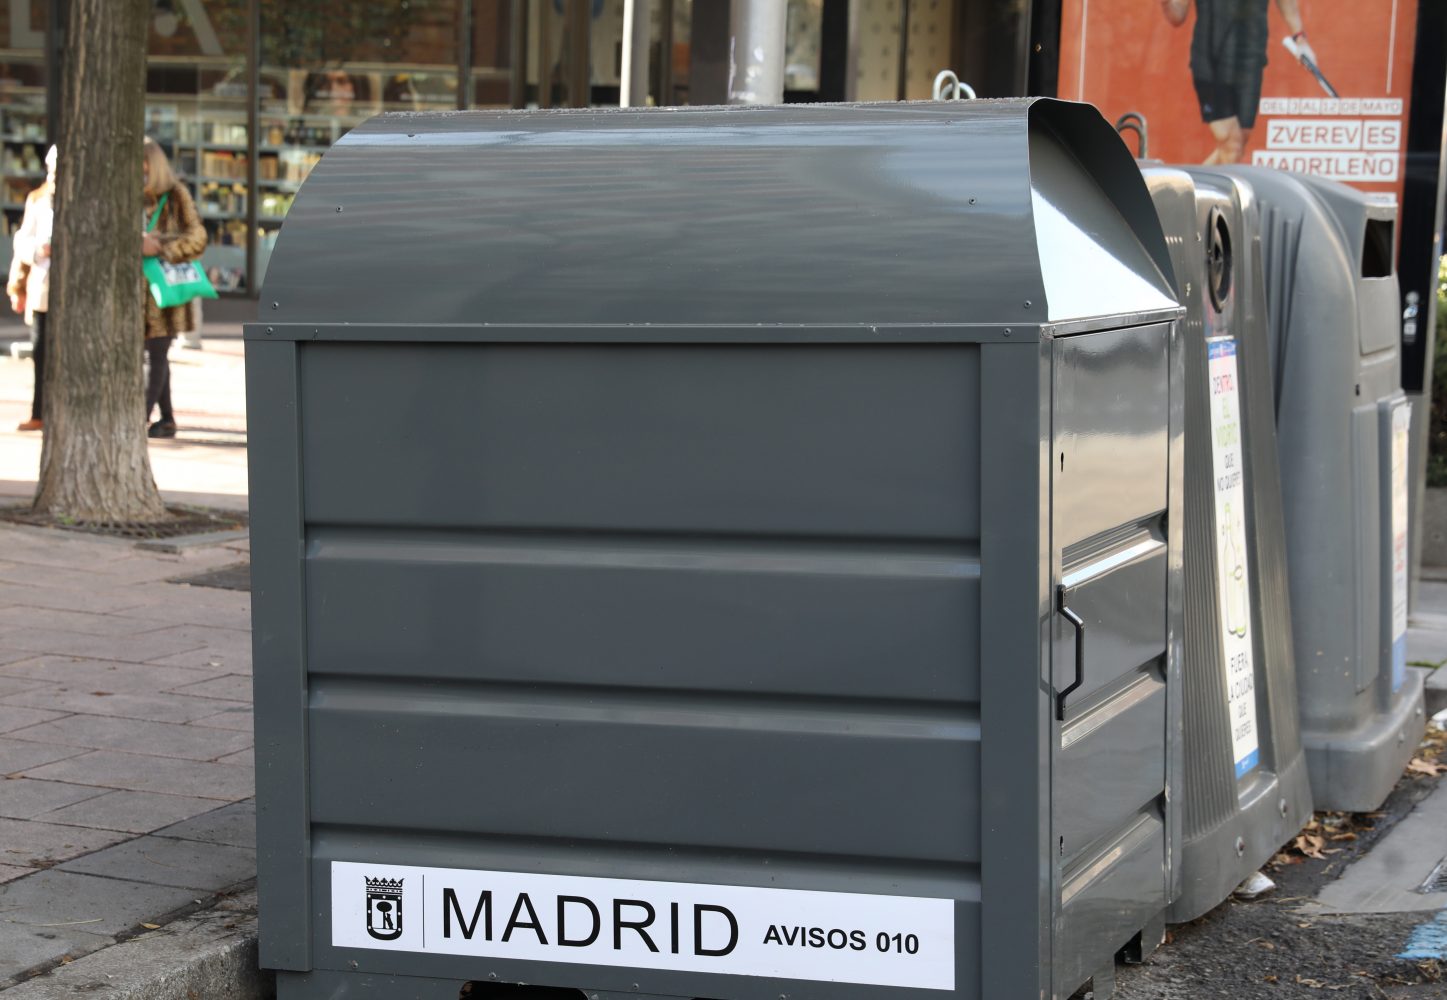 Esmerado Microordenador También Madrid estrena un nuevo servicio de recogida de ropa usada con 784  contenedores – Diario del Ayuntamiento de Madrid